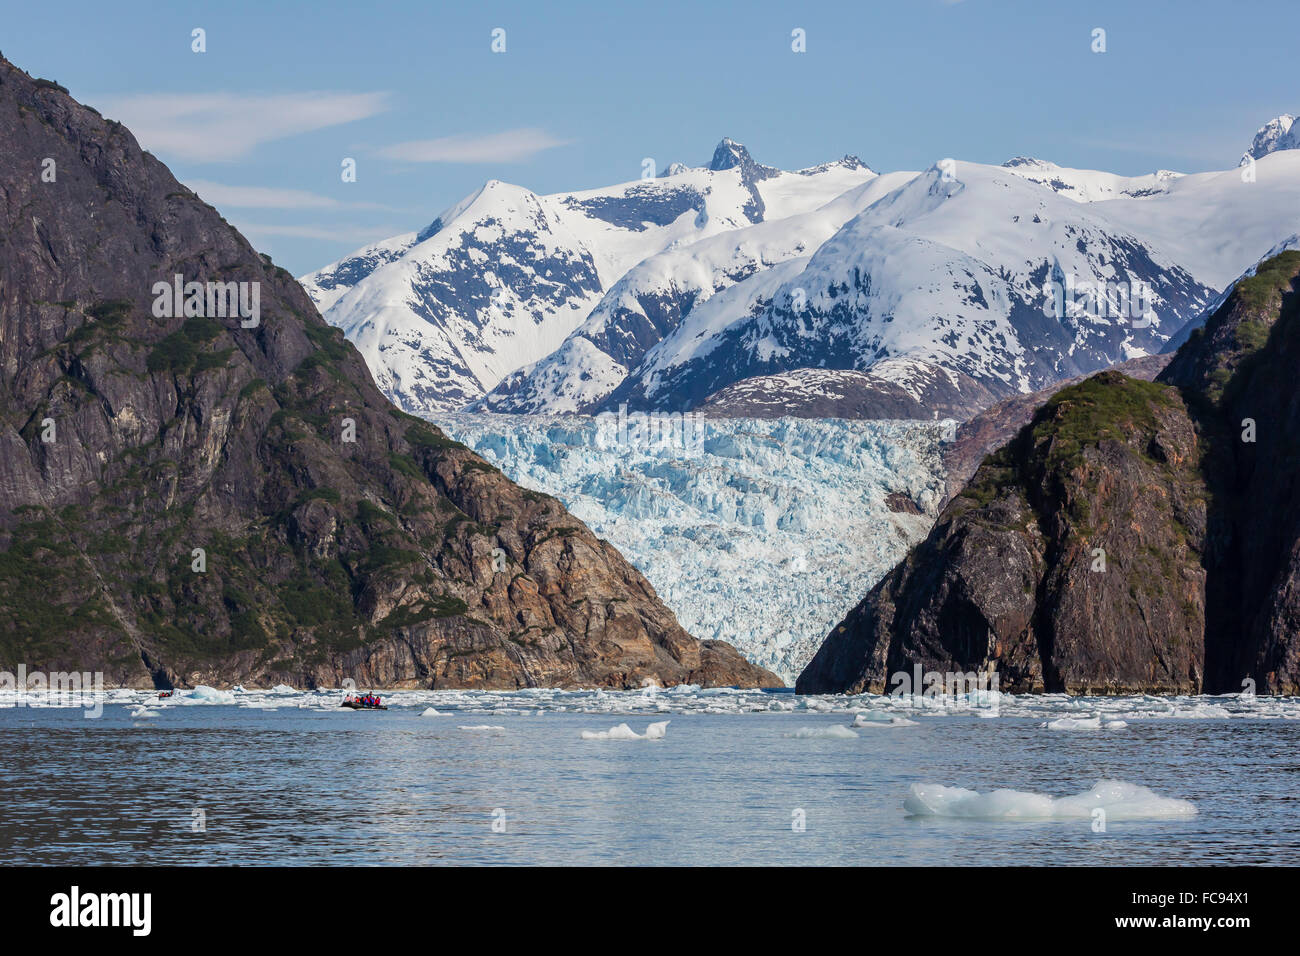 Einen herrlichen Blick auf den südlichen Sawyer Gletscher in Tracy Arm-Fords Terror Wilderness Area im südöstlichen Alaska, Vereinigte Staaten von Amerika Stockfoto